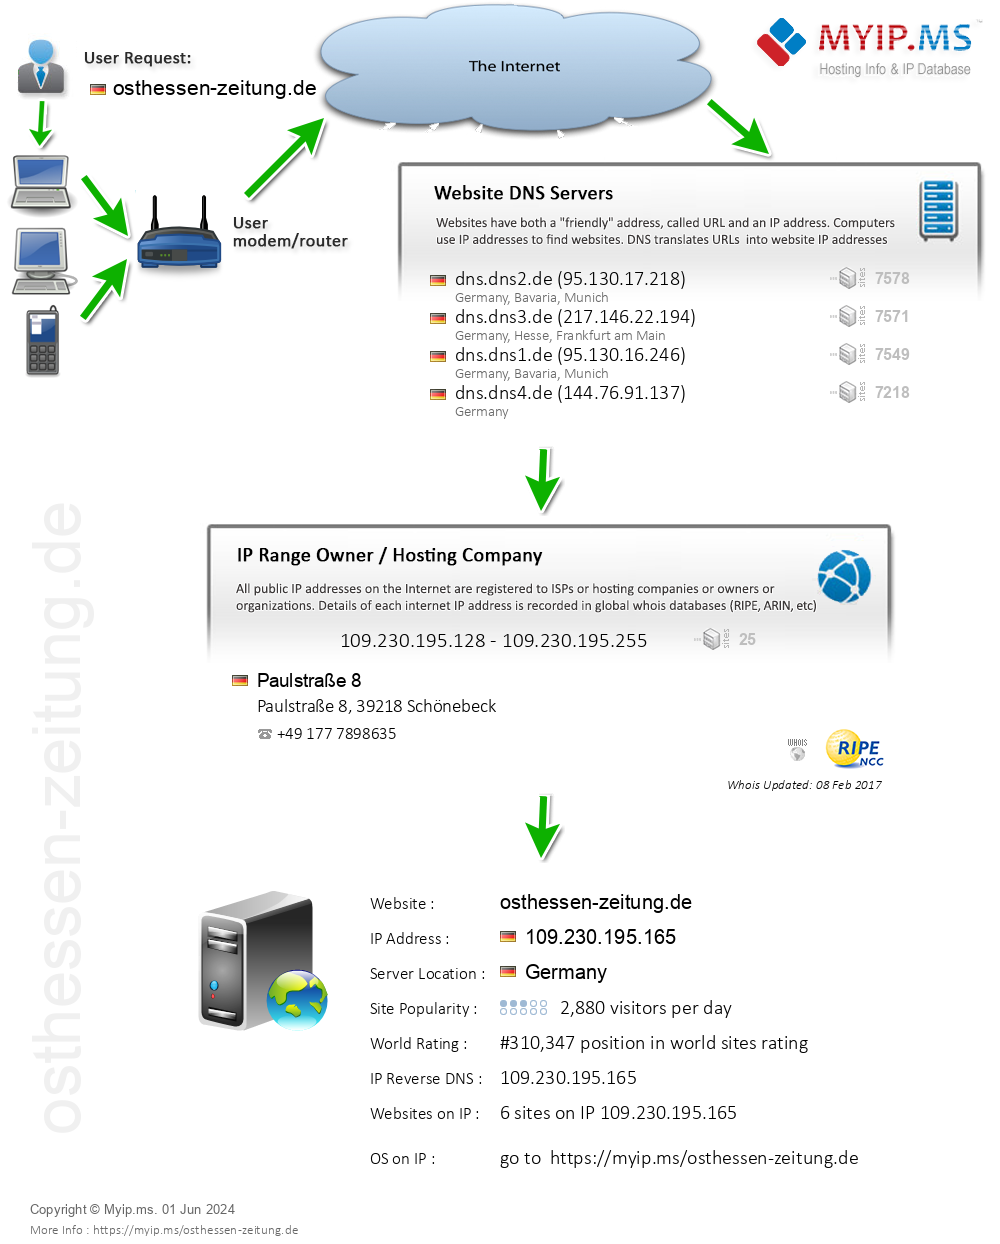 Osthessen-zeitung.de - Website Hosting Visual IP Diagram